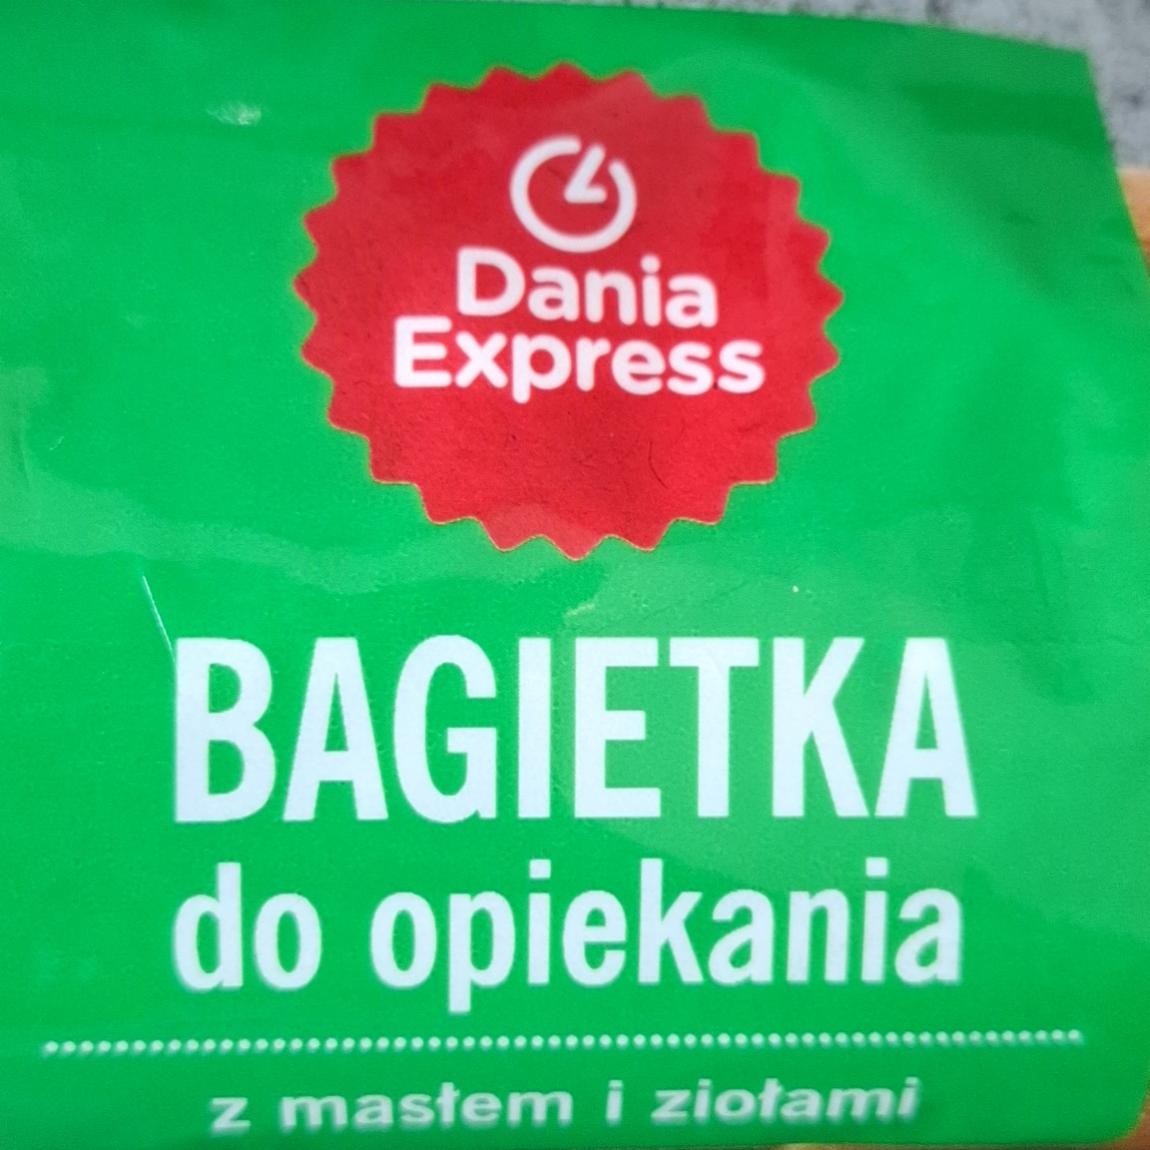 Fotografie - Bagietka do opiekania z maslem i ziolami Dania Express